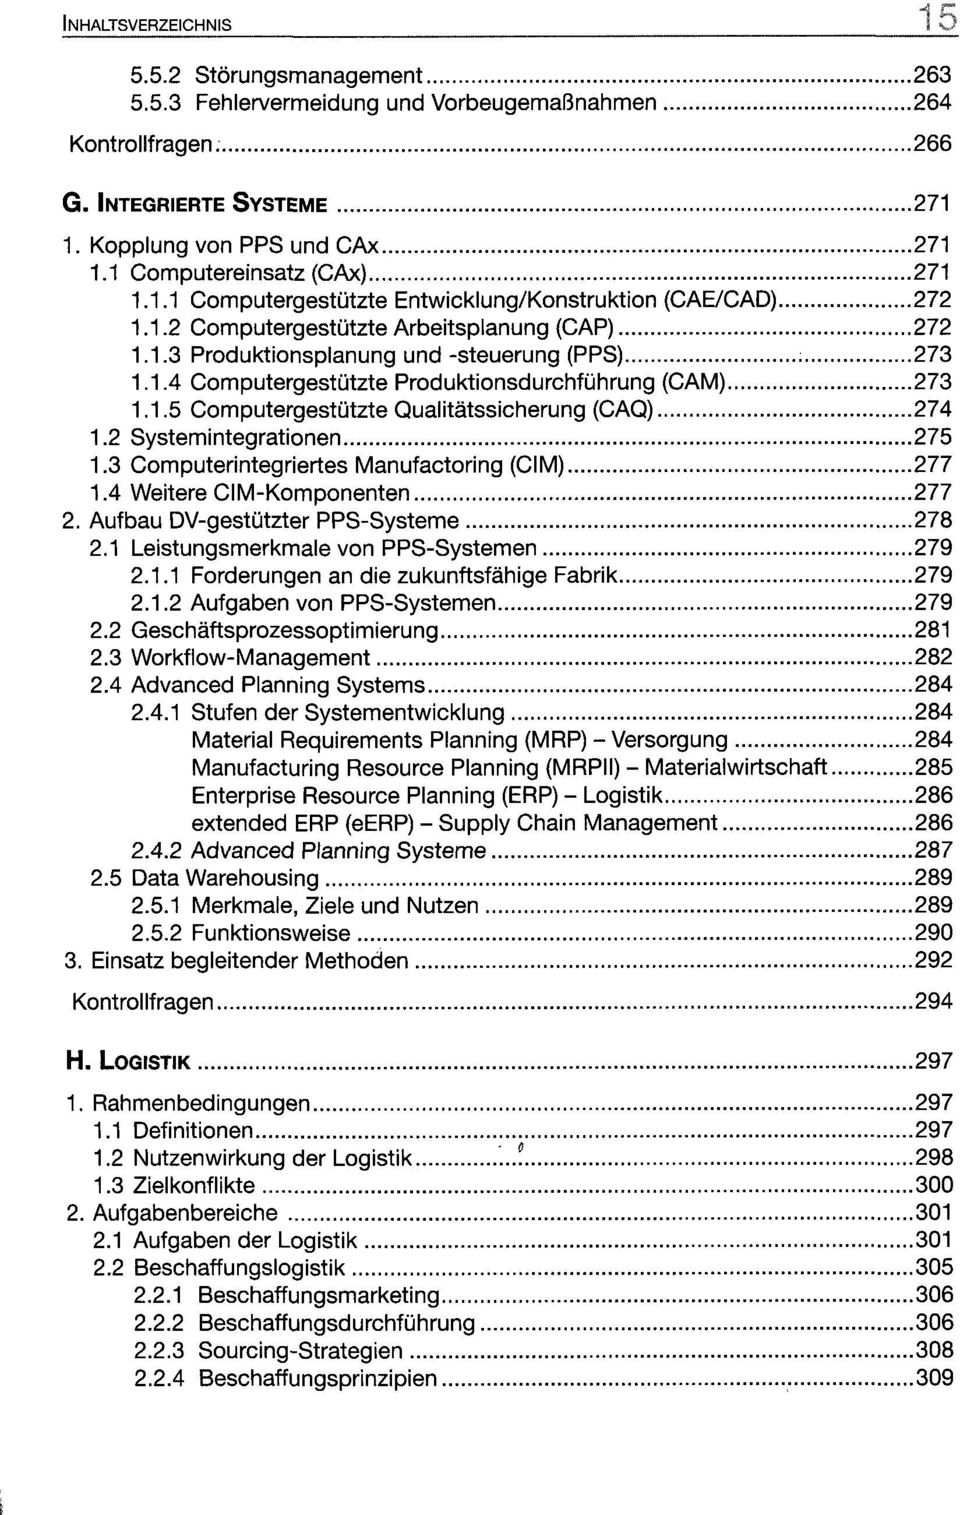 1.5 Computergestützte Qualitätssicherung (CAQ) 274 1.2 Systemintegrationen 275 1.3 Computerintegriertes Manufactoring (CIM) 277 1.4 Weitere CIM-Komponenten 277 2.